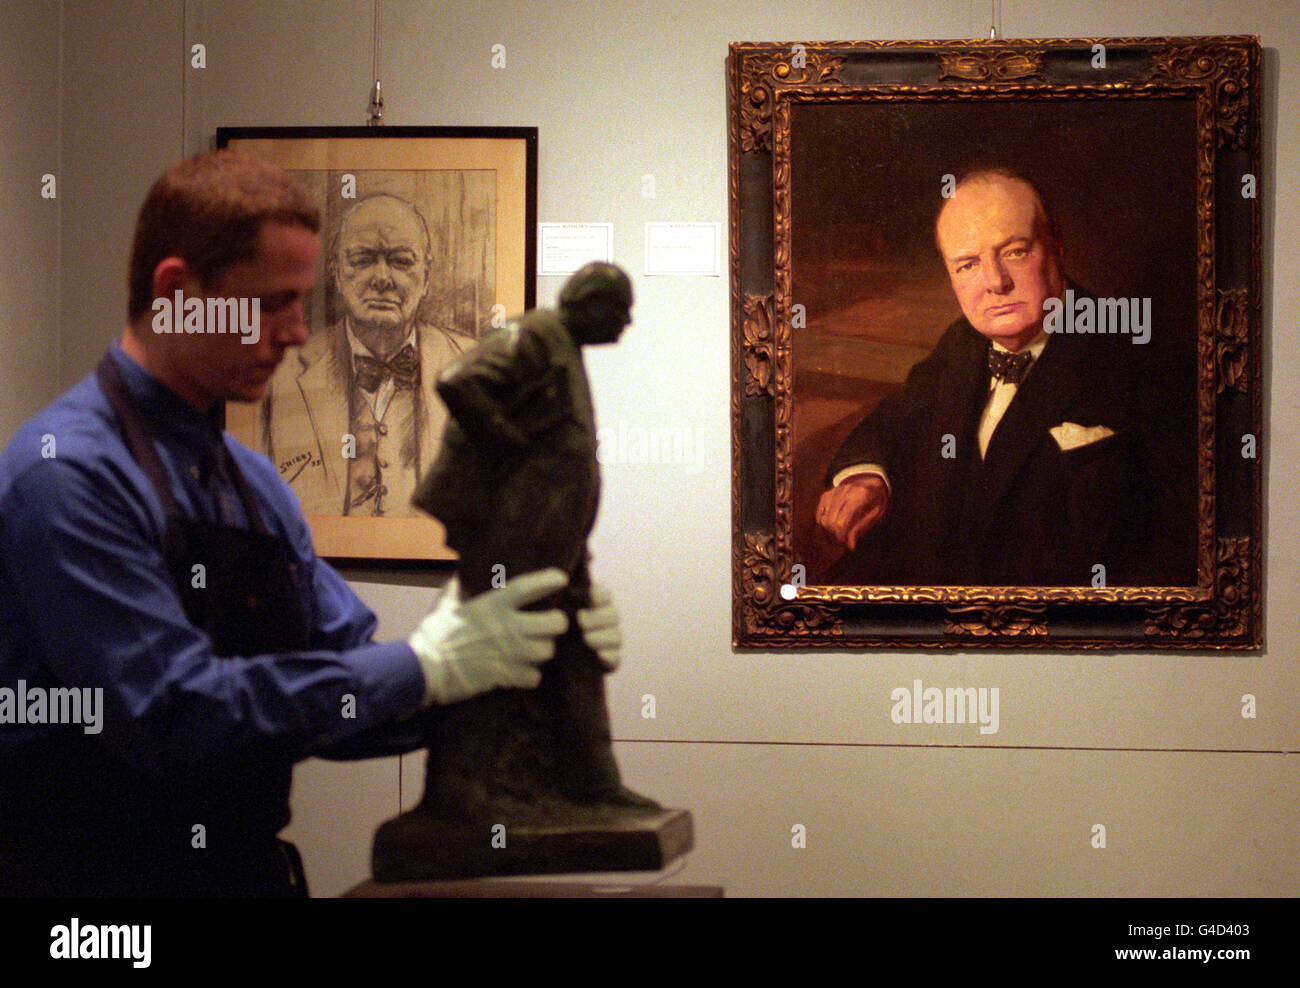 Un homme de Sotheby's déplace une statue d'Oscar Nemon de Sir Winston Churchill devant un portrait de John Berrie avant la vente de souvenirs politiques. Banque D'Images